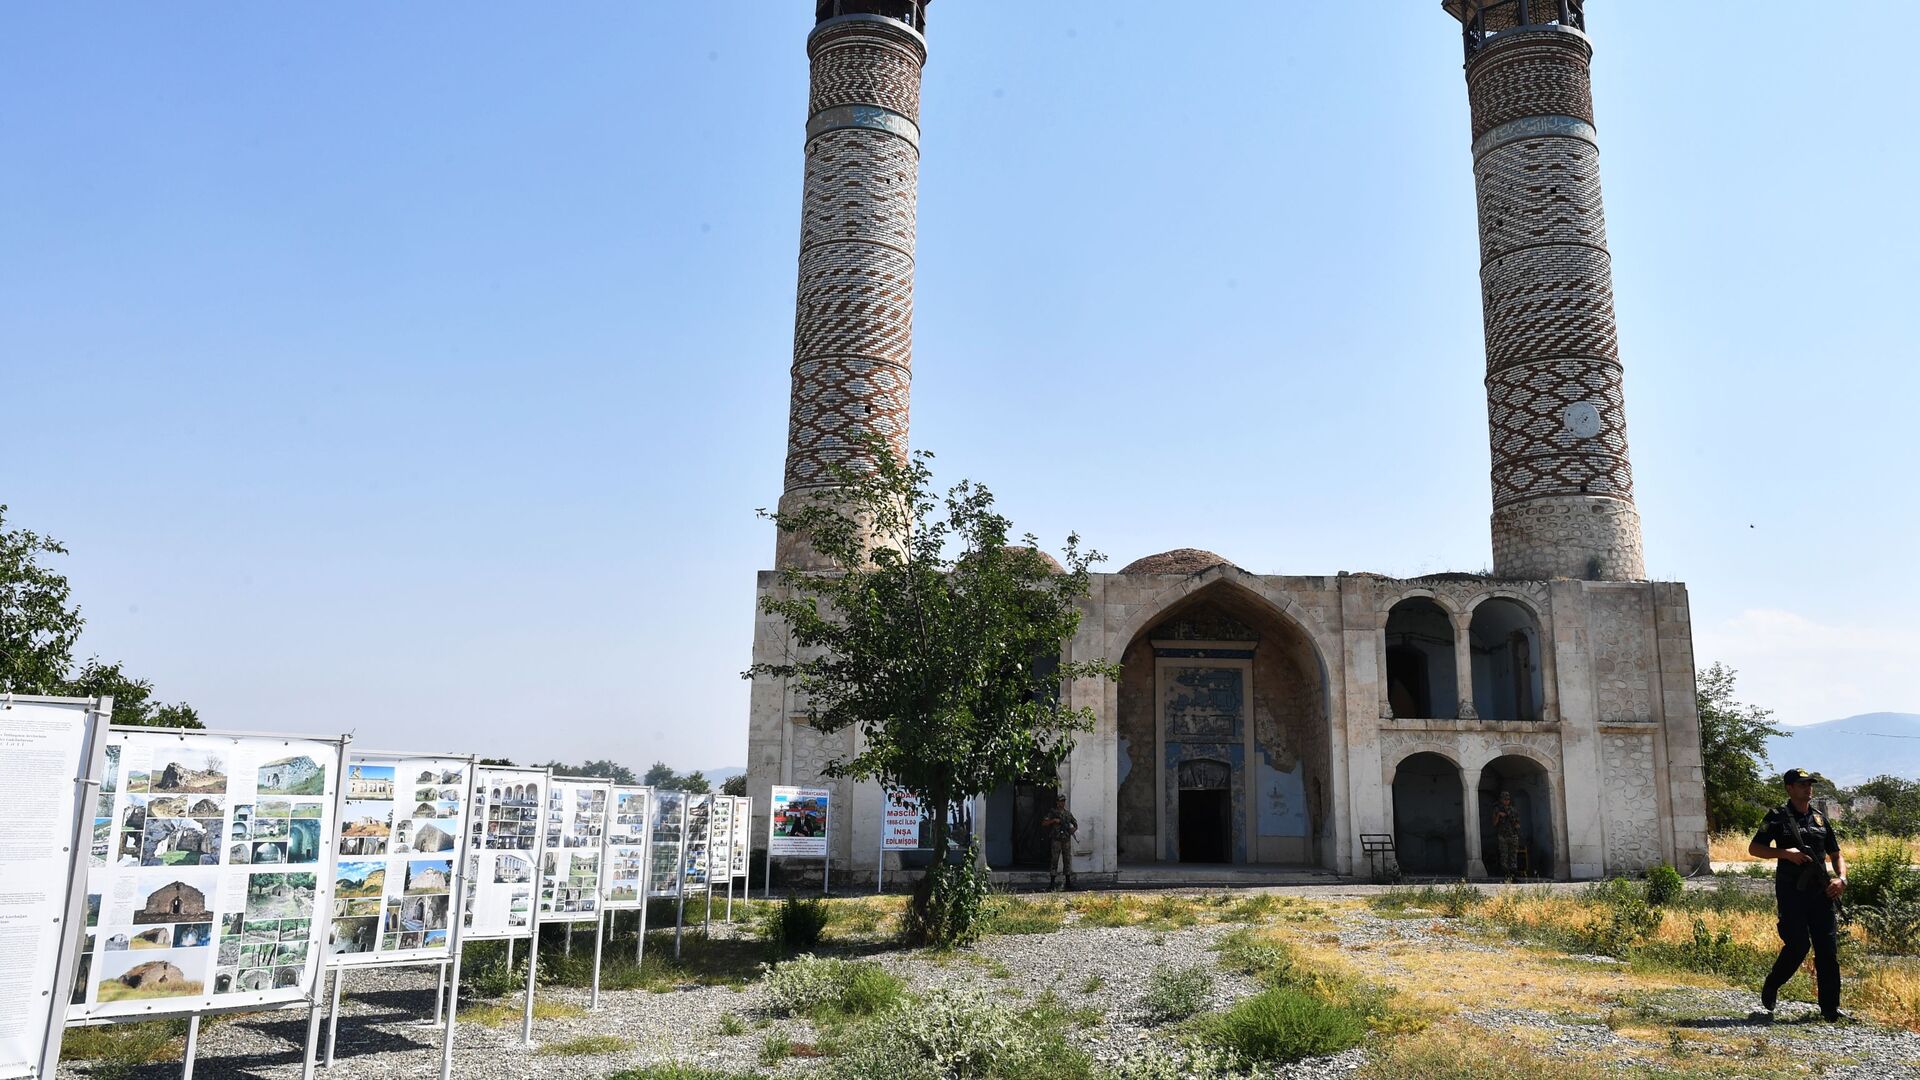 Мечеть Джума в разрушенном городе Агдам. - Sputnik Азербайджан, 1920, 14.08.2021